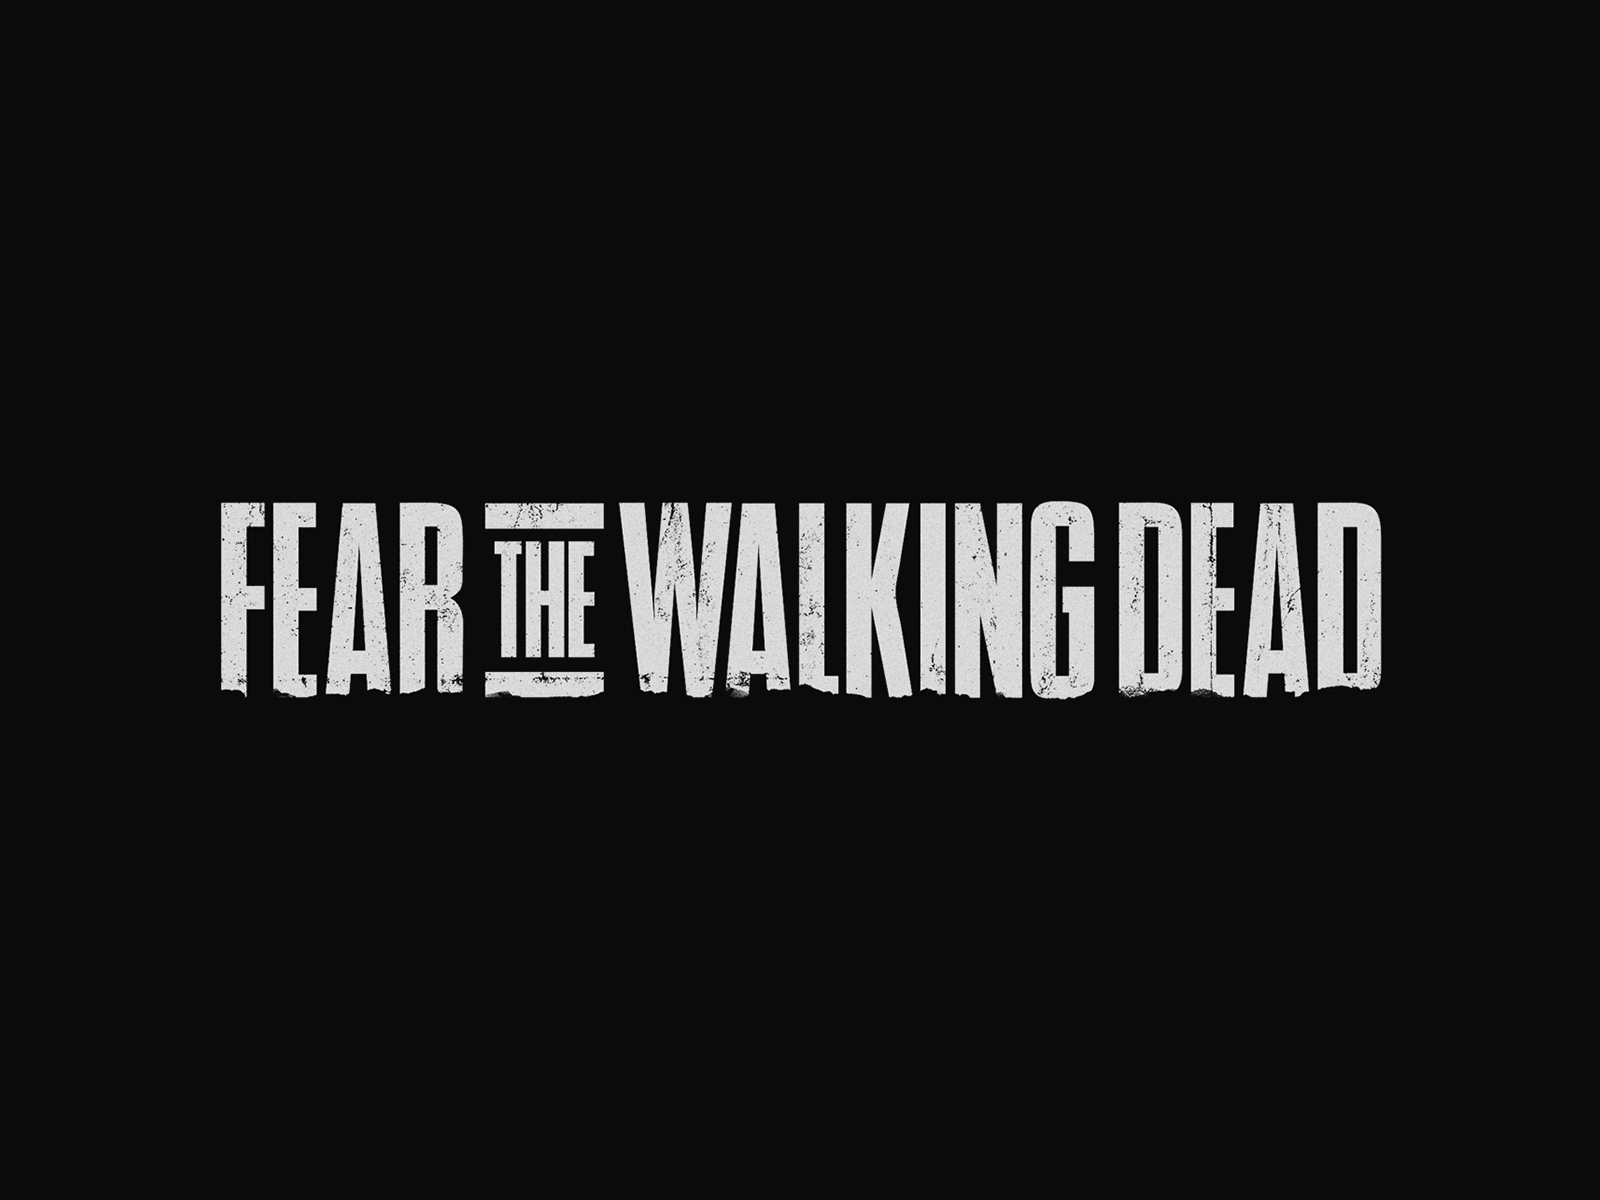 Fear the Walking Dead // Title Treatment Concept by Matt Mason on Dribbble